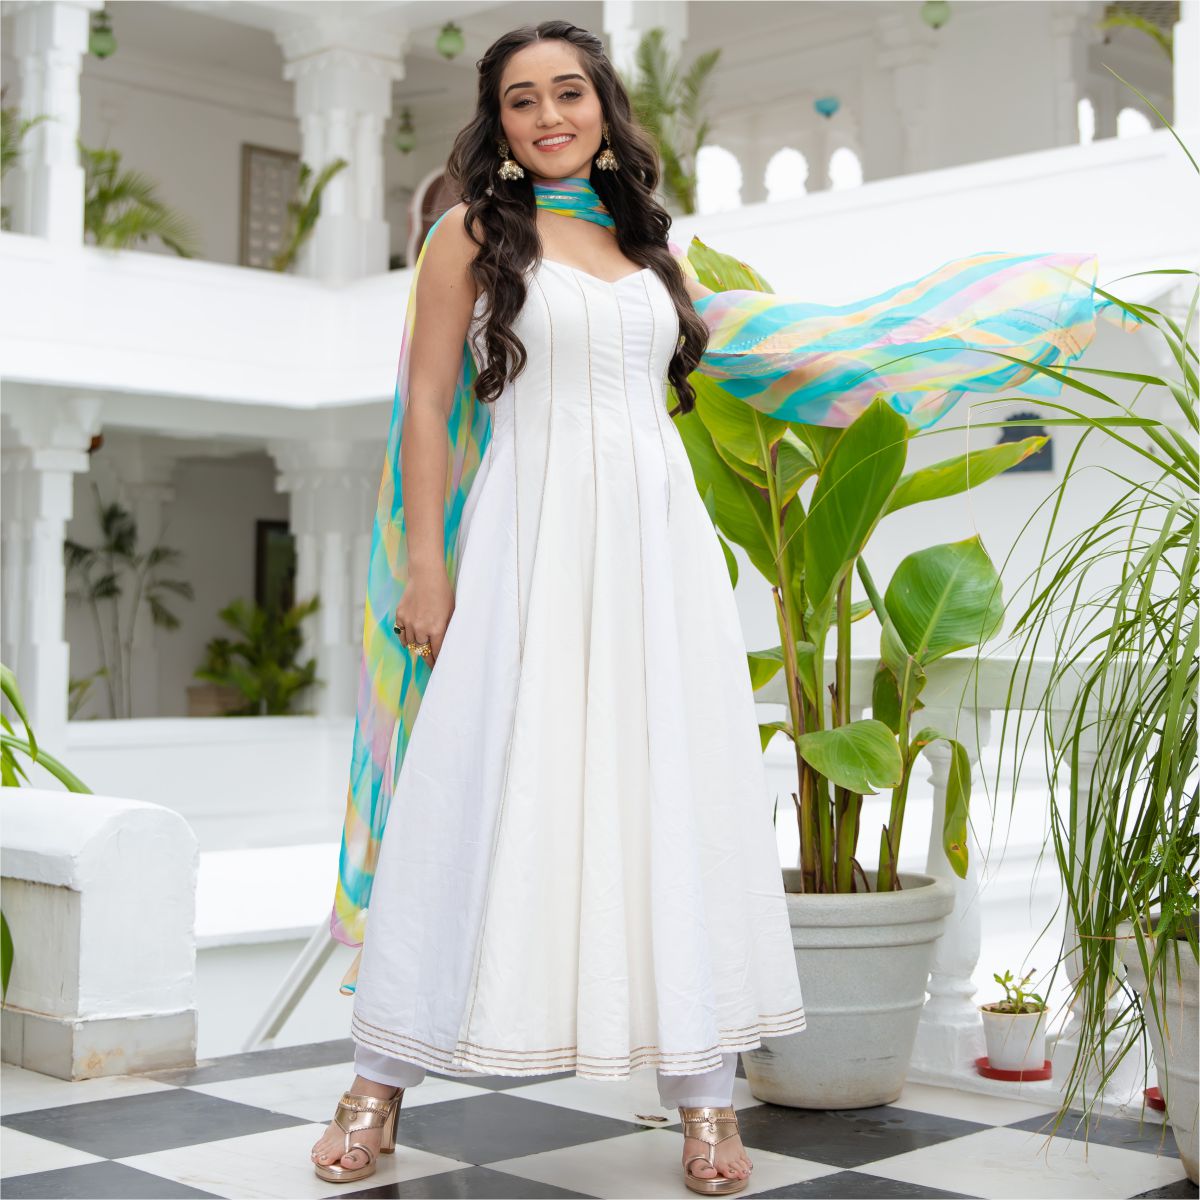 THAWAR JI Anarkali Gown Price in India - Buy THAWAR JI Anarkali Gown online  at Flipkart.com